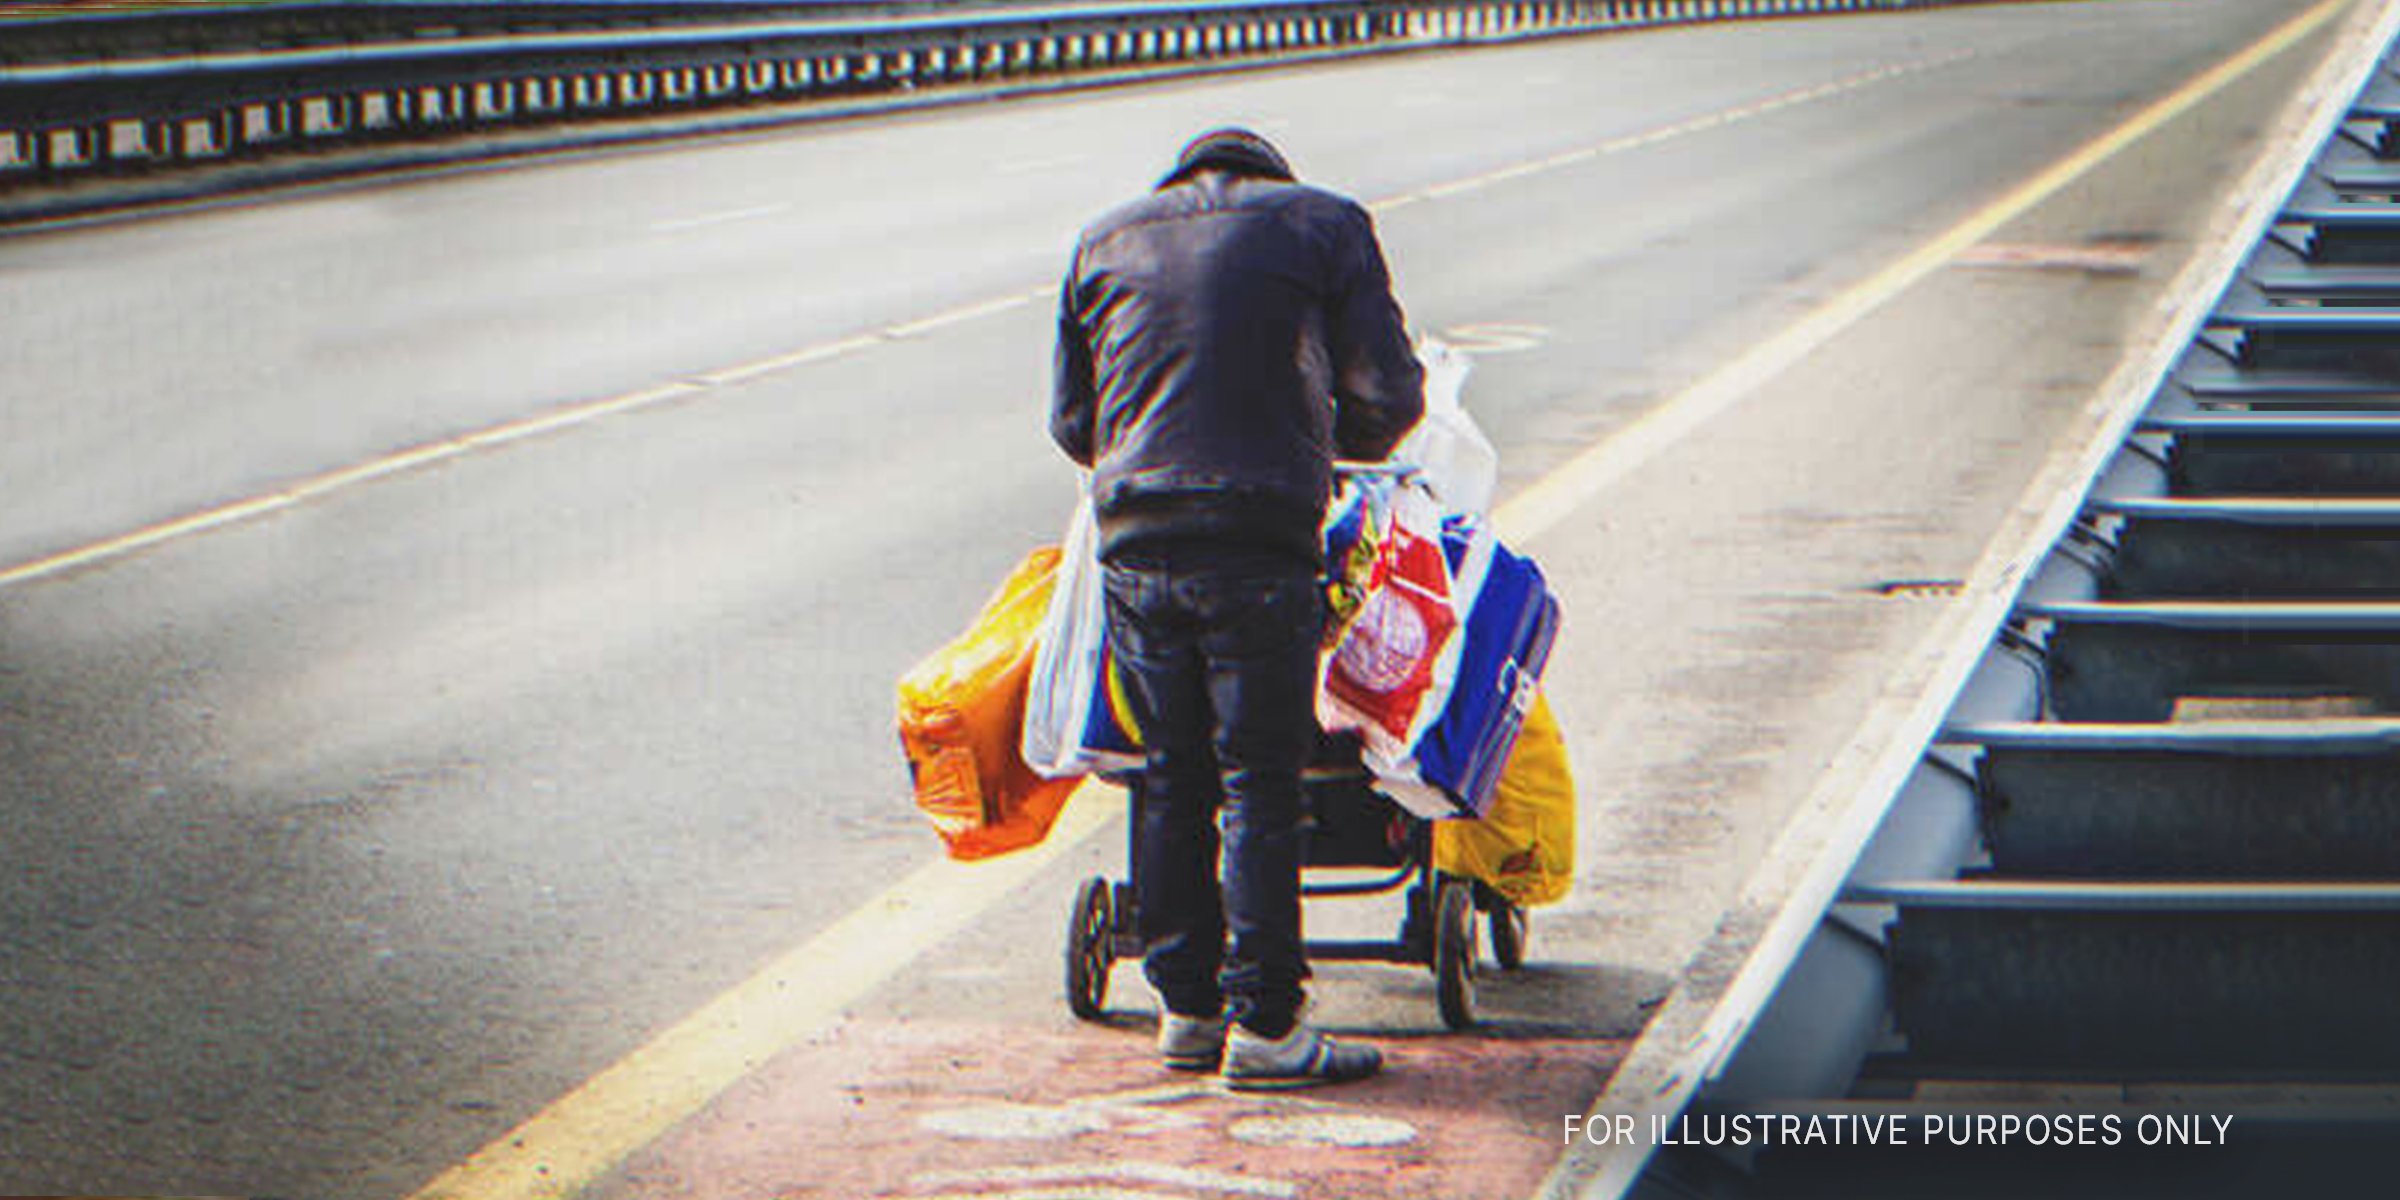 Man pushing cart of belongings. | Source: Shutterstock